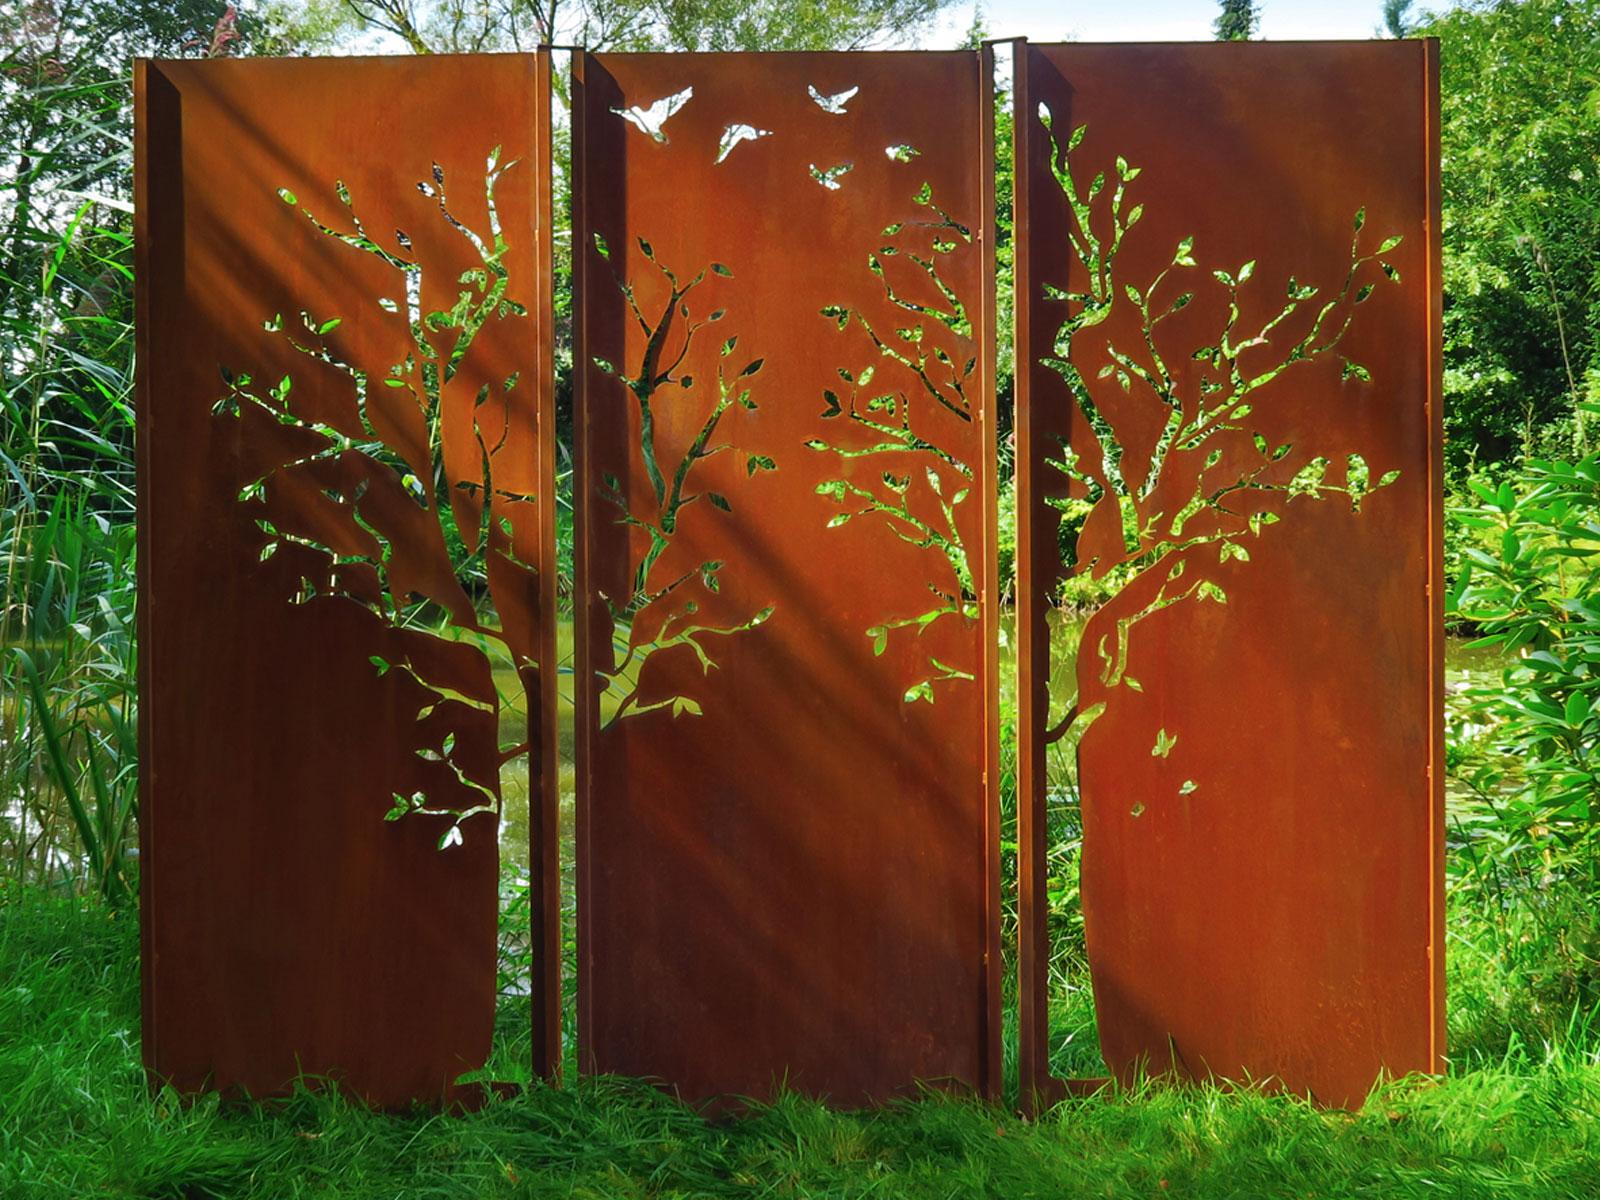 Steel Garden Wall - "Triptych Tree" - Modern Outdoor Ornament - 225 x 195 cm - Mixed Media Art by Stefan Traloc